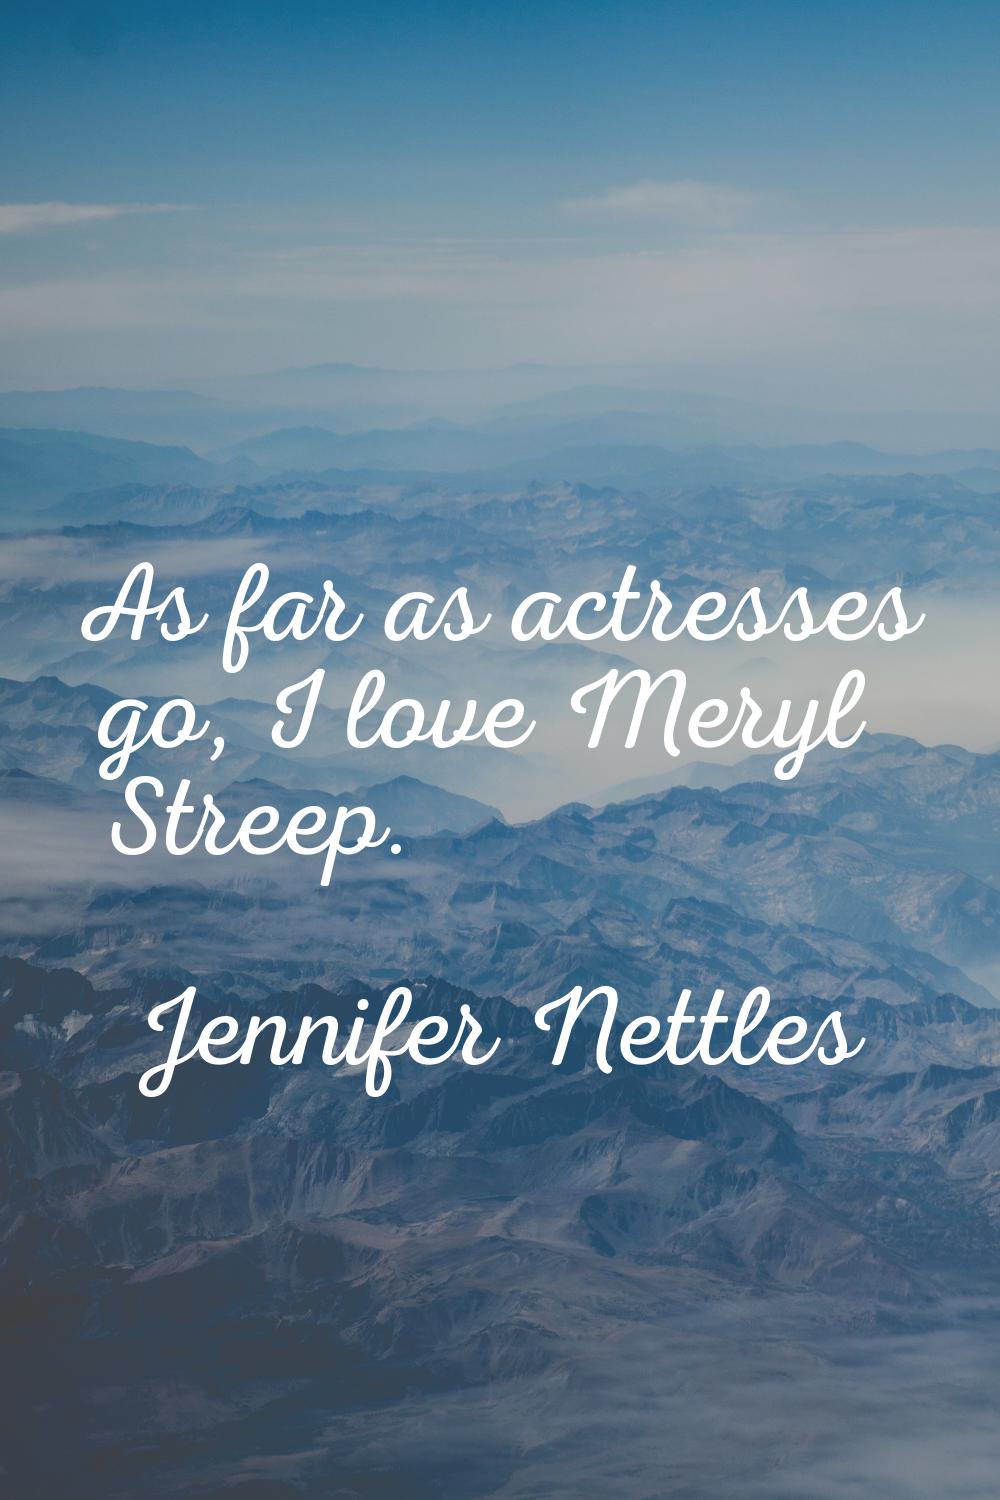 As far as actresses go, I love Meryl Streep.